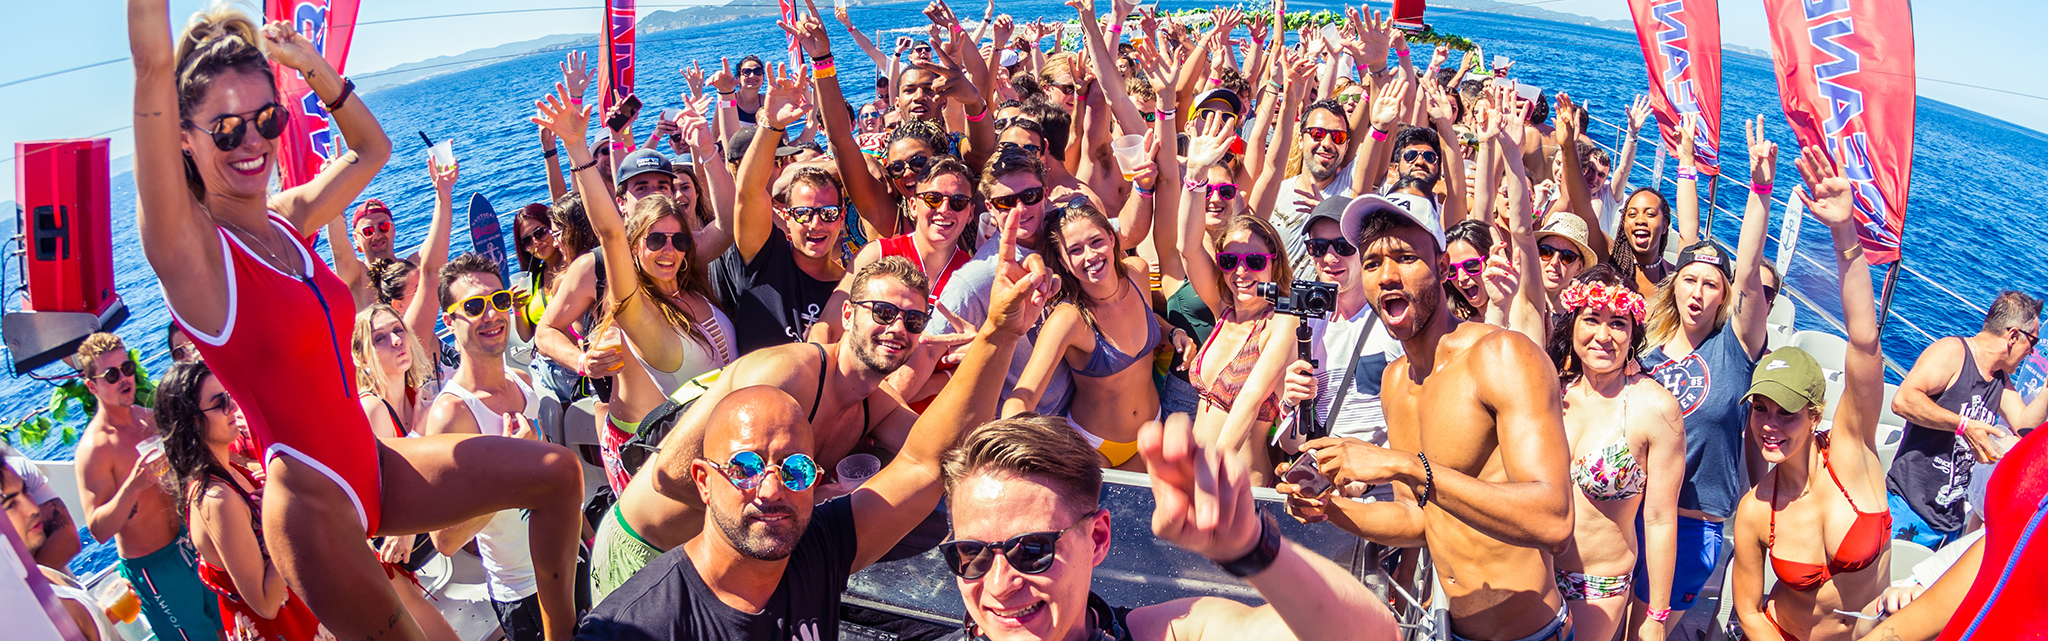 Oceanbeat Ibiza boat party